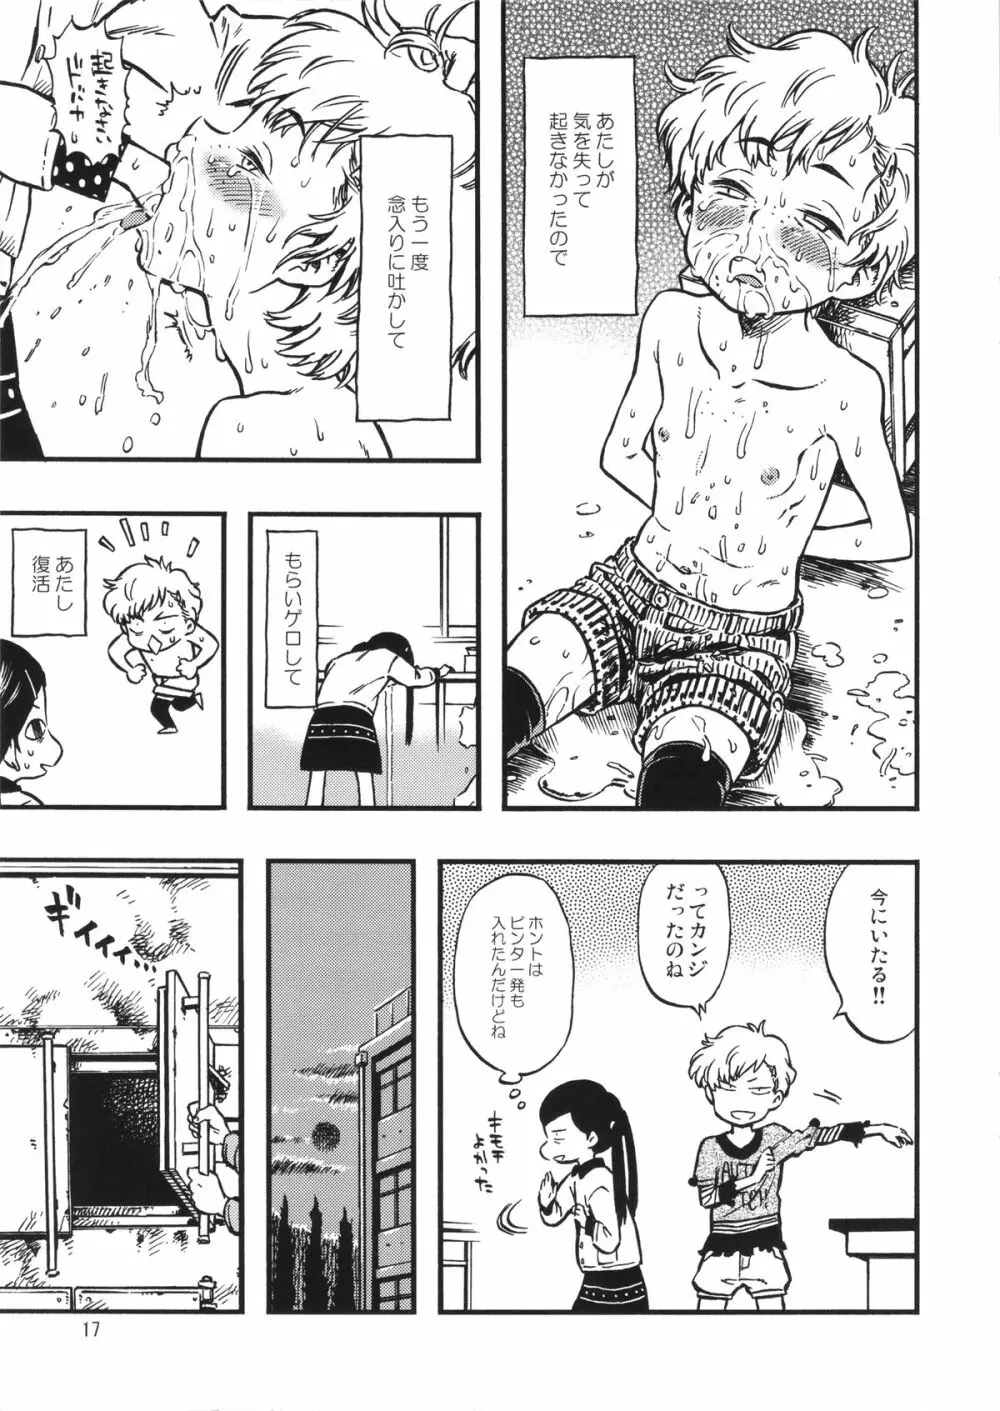 ゲロ子ちゃんとチクビ子ちゃん - page16